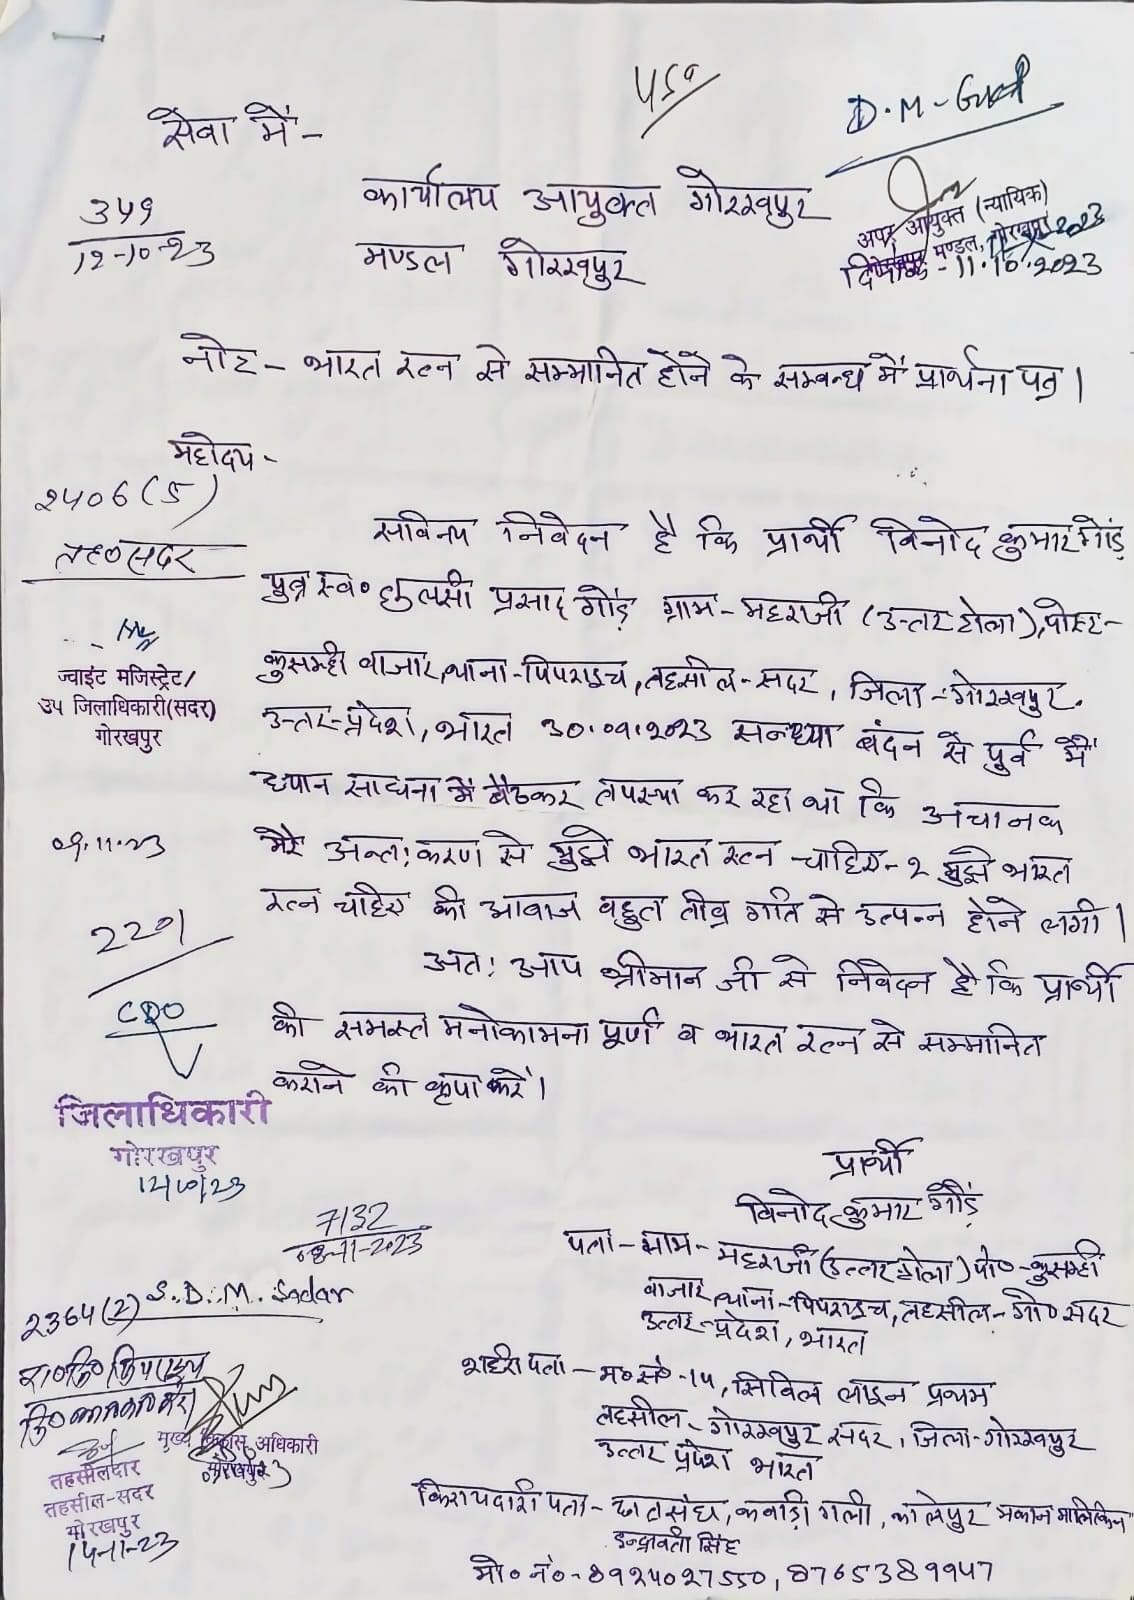 इस व्यक्ति ने मांगा 'भारत रत्न', तपस्या के दौरान अंत:करण से उठी आवाज के बाद आयुक्त को लिखा पत्र